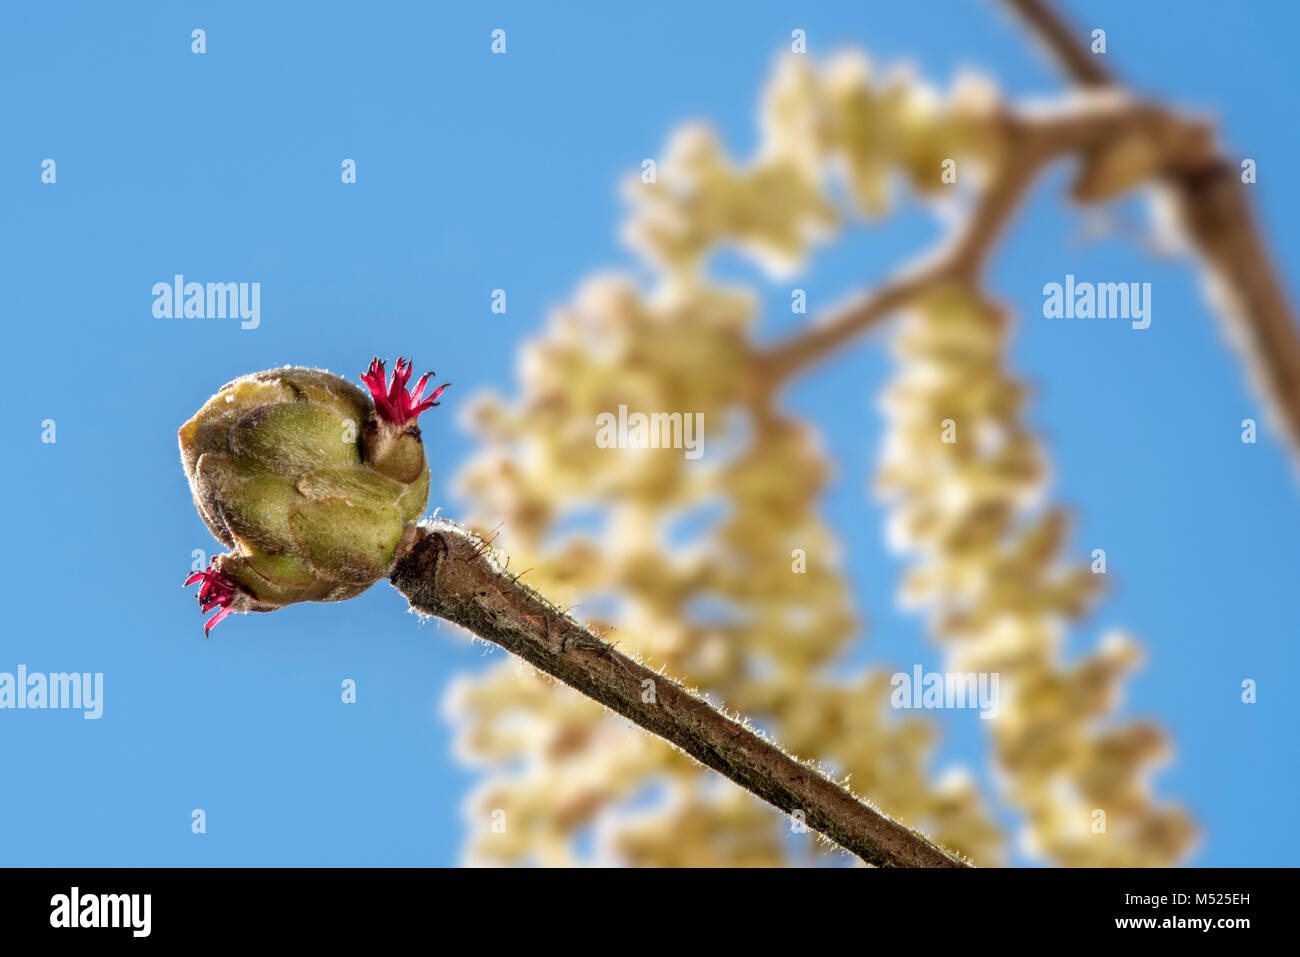 Le noisetier commun (Corylus avellana) châton de bud, dissimulé dans les styles avec seulement rouge visible contre le ciel bleu Banque D'Images